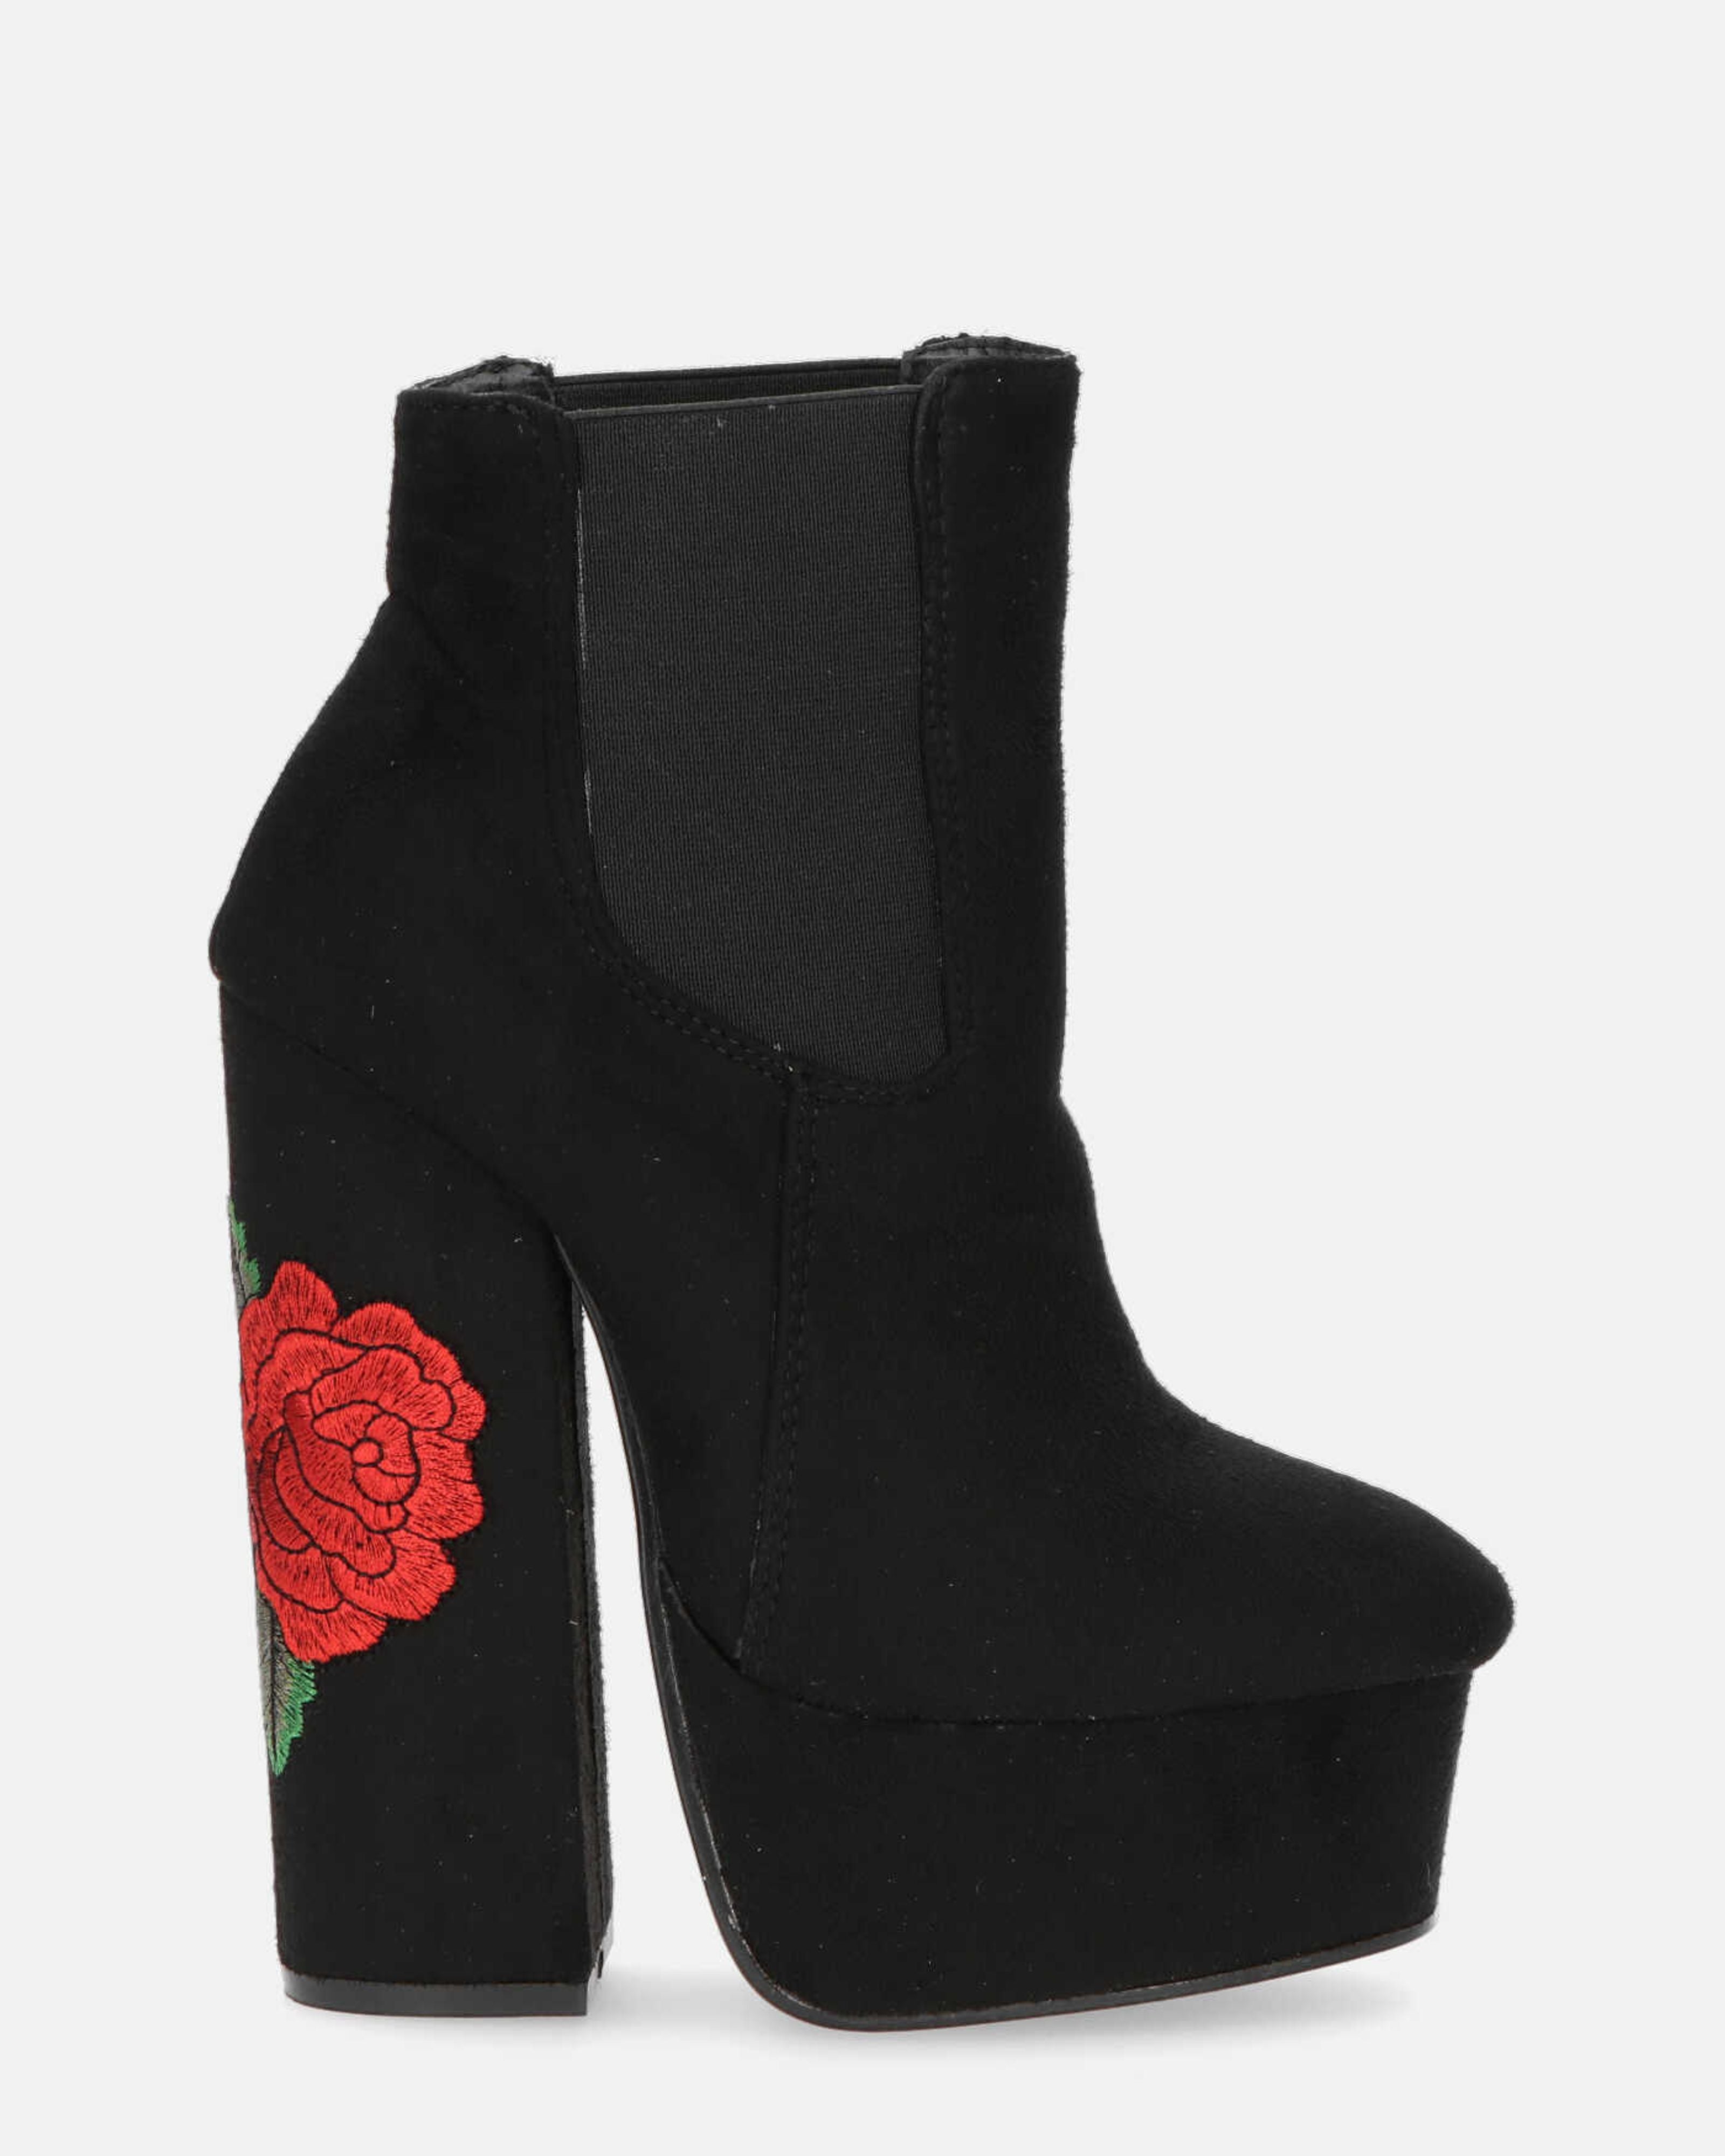 ELIZA - botín de tacón en ante negro con rosas bordadas